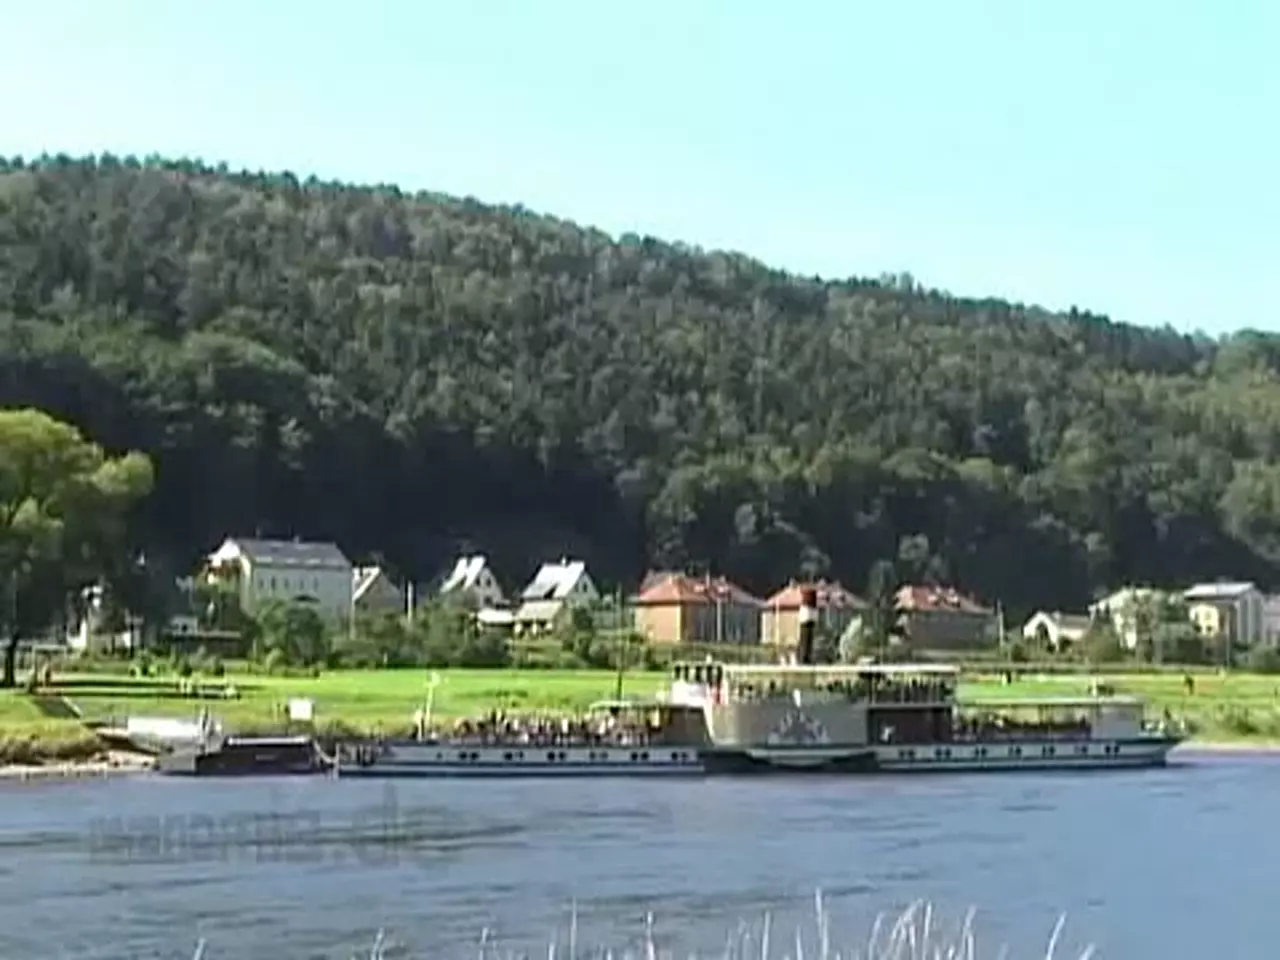 Foto: Schaufelraddampfer Pirna der Sächsischen Dampfschifffahrt in Bad Schandau